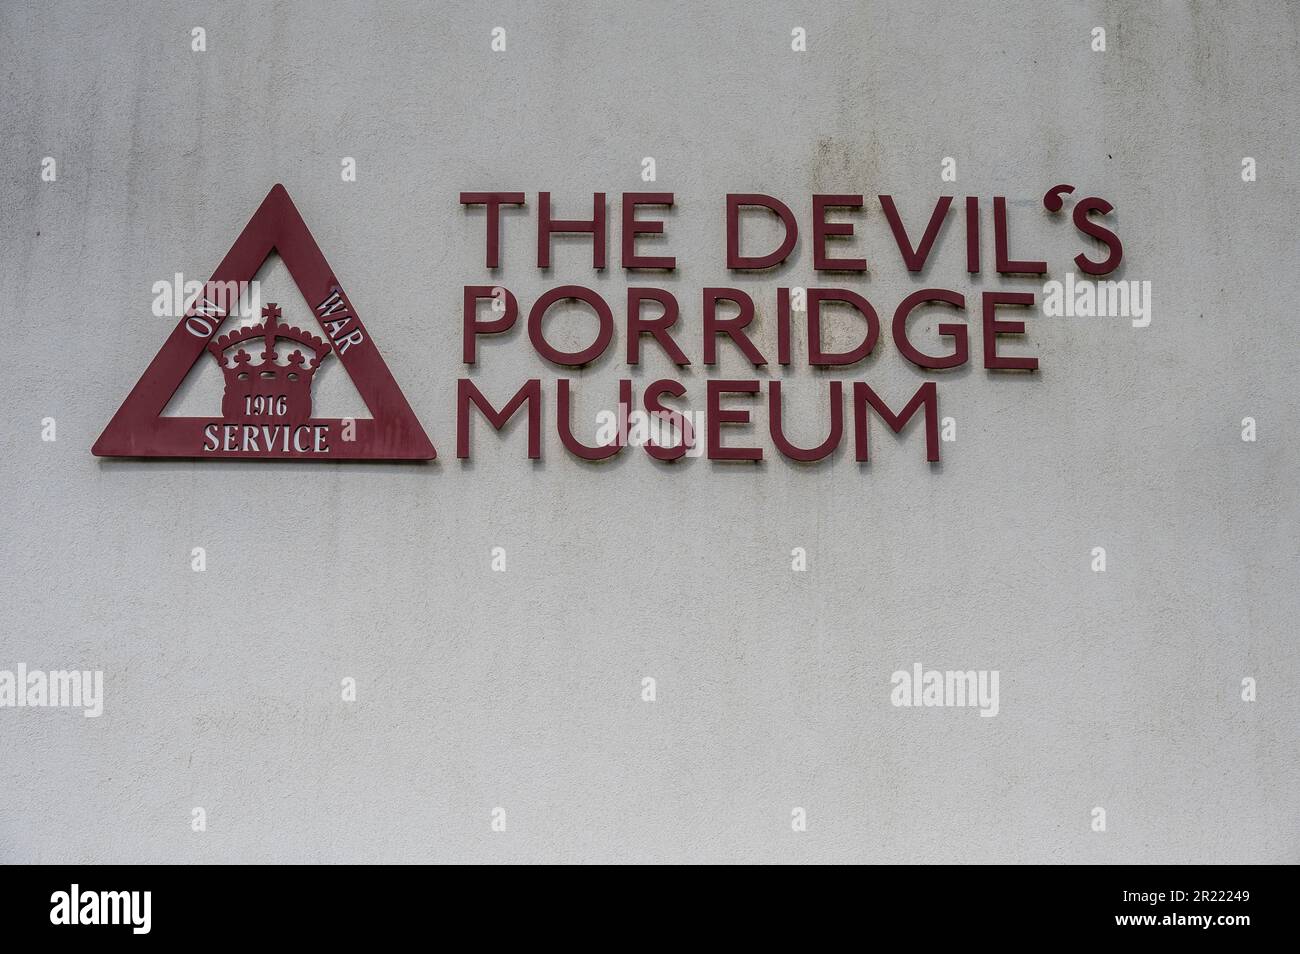 Dieses Bild im Devil's Porridge Museum zeigt die Kordite-Munitionsfabrik des Verteidigungsministeriums aus dem Ersten Weltkrieg Stockfoto